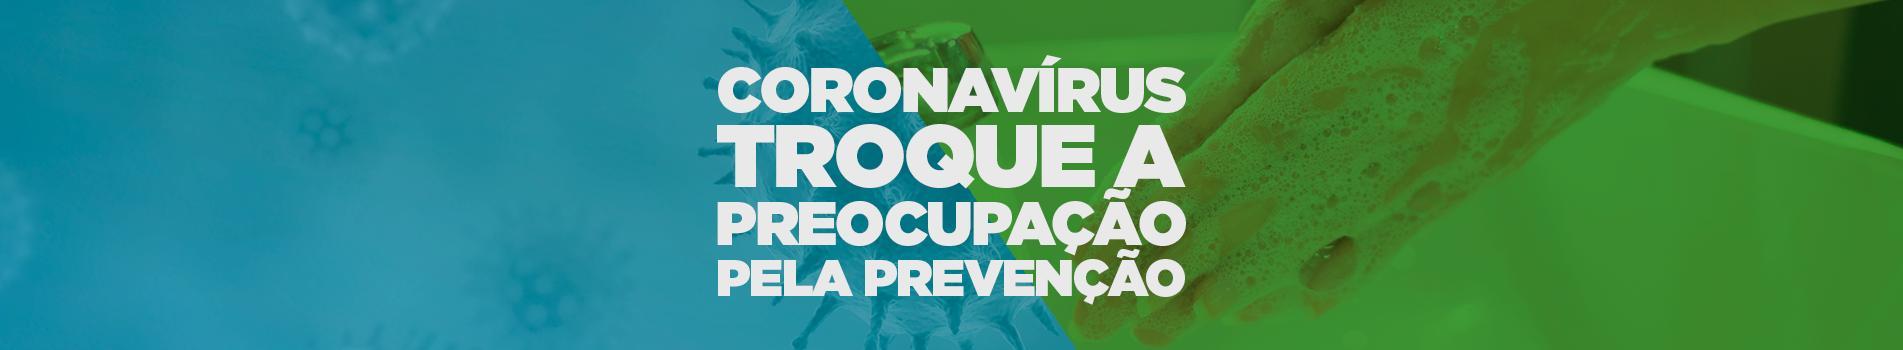 Coronavírus troque a preocupação pela prevenção